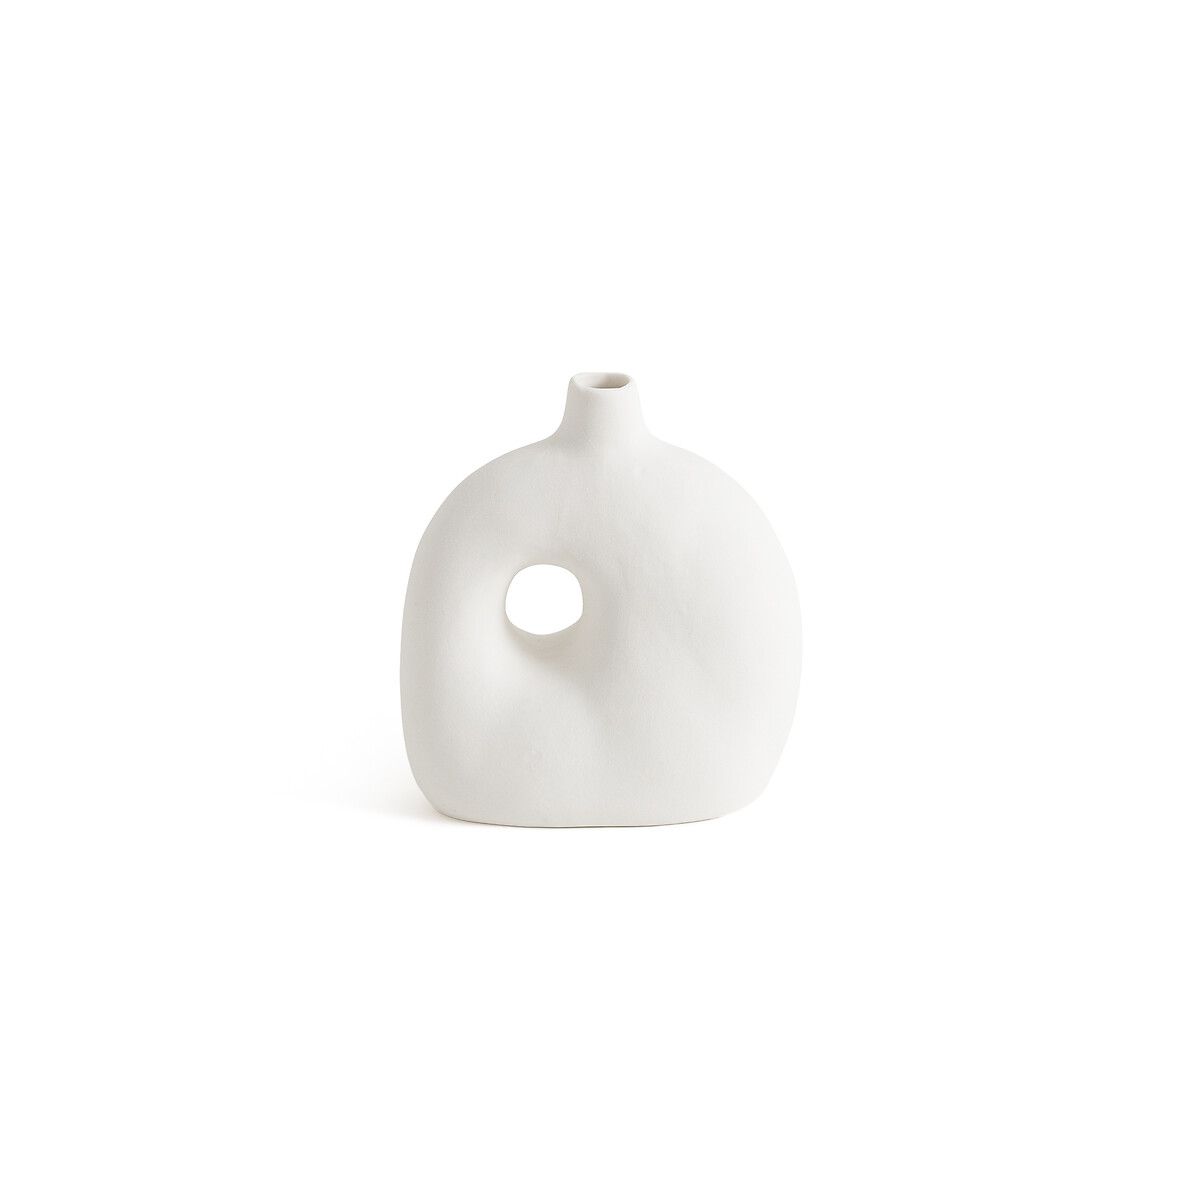 Pieta 16.5cm High Ceramic Vase | La Redoute (UK)